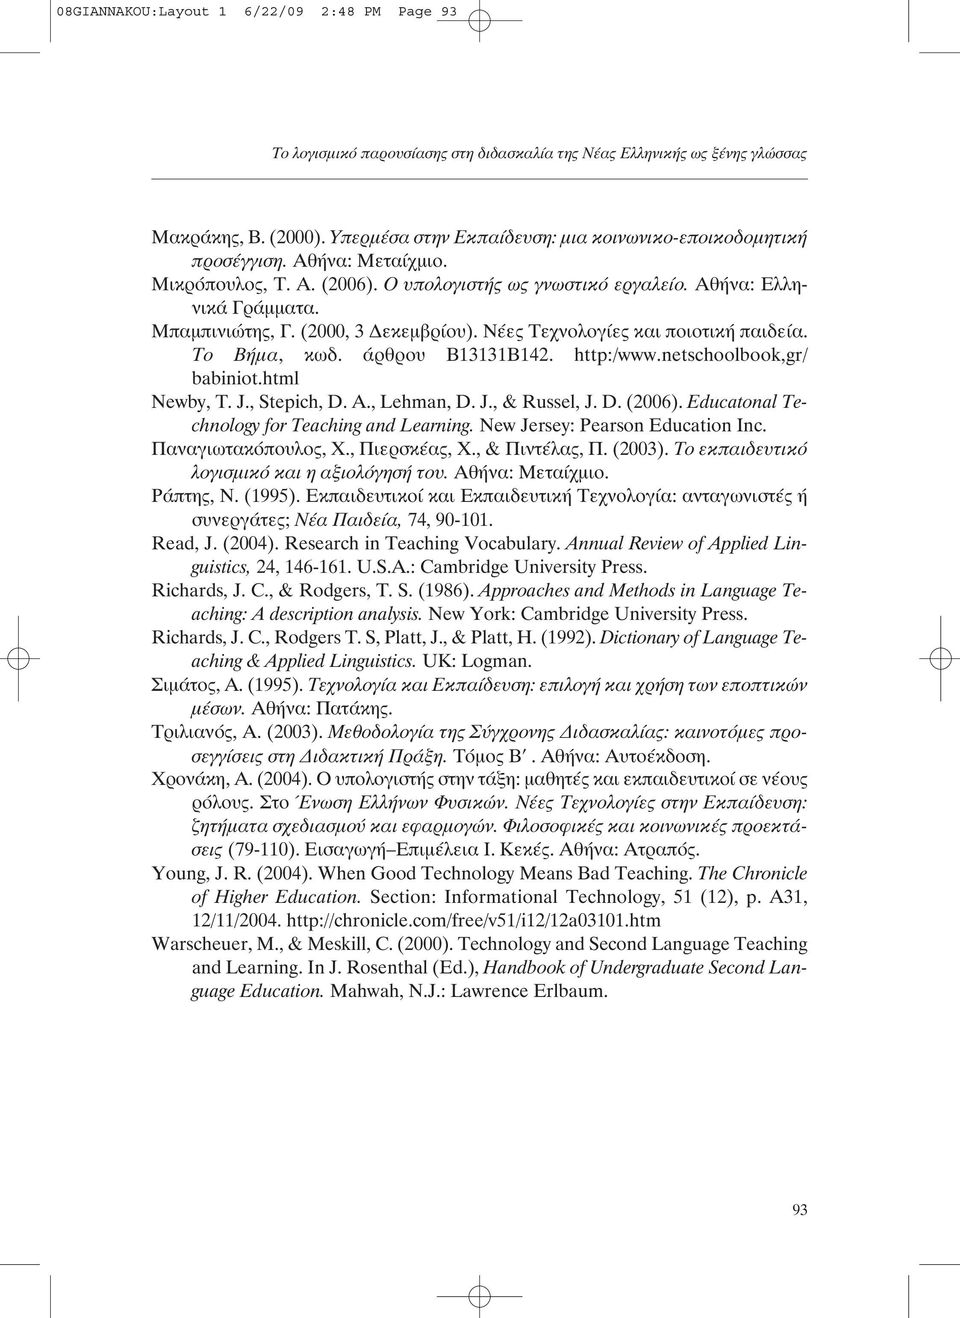 (2000, 3 εκεµβρίου). Νέες Τεχνολογίες και ποιοτική παιδεία. Το Βήµα, κωδ. άρθρου Β13131Β142. http:/www.netschoolbook,gr/ babiniot.html Newby, T. J., Stepich, D. A., Lehman, D. J., & Russel, J. D. (2006).